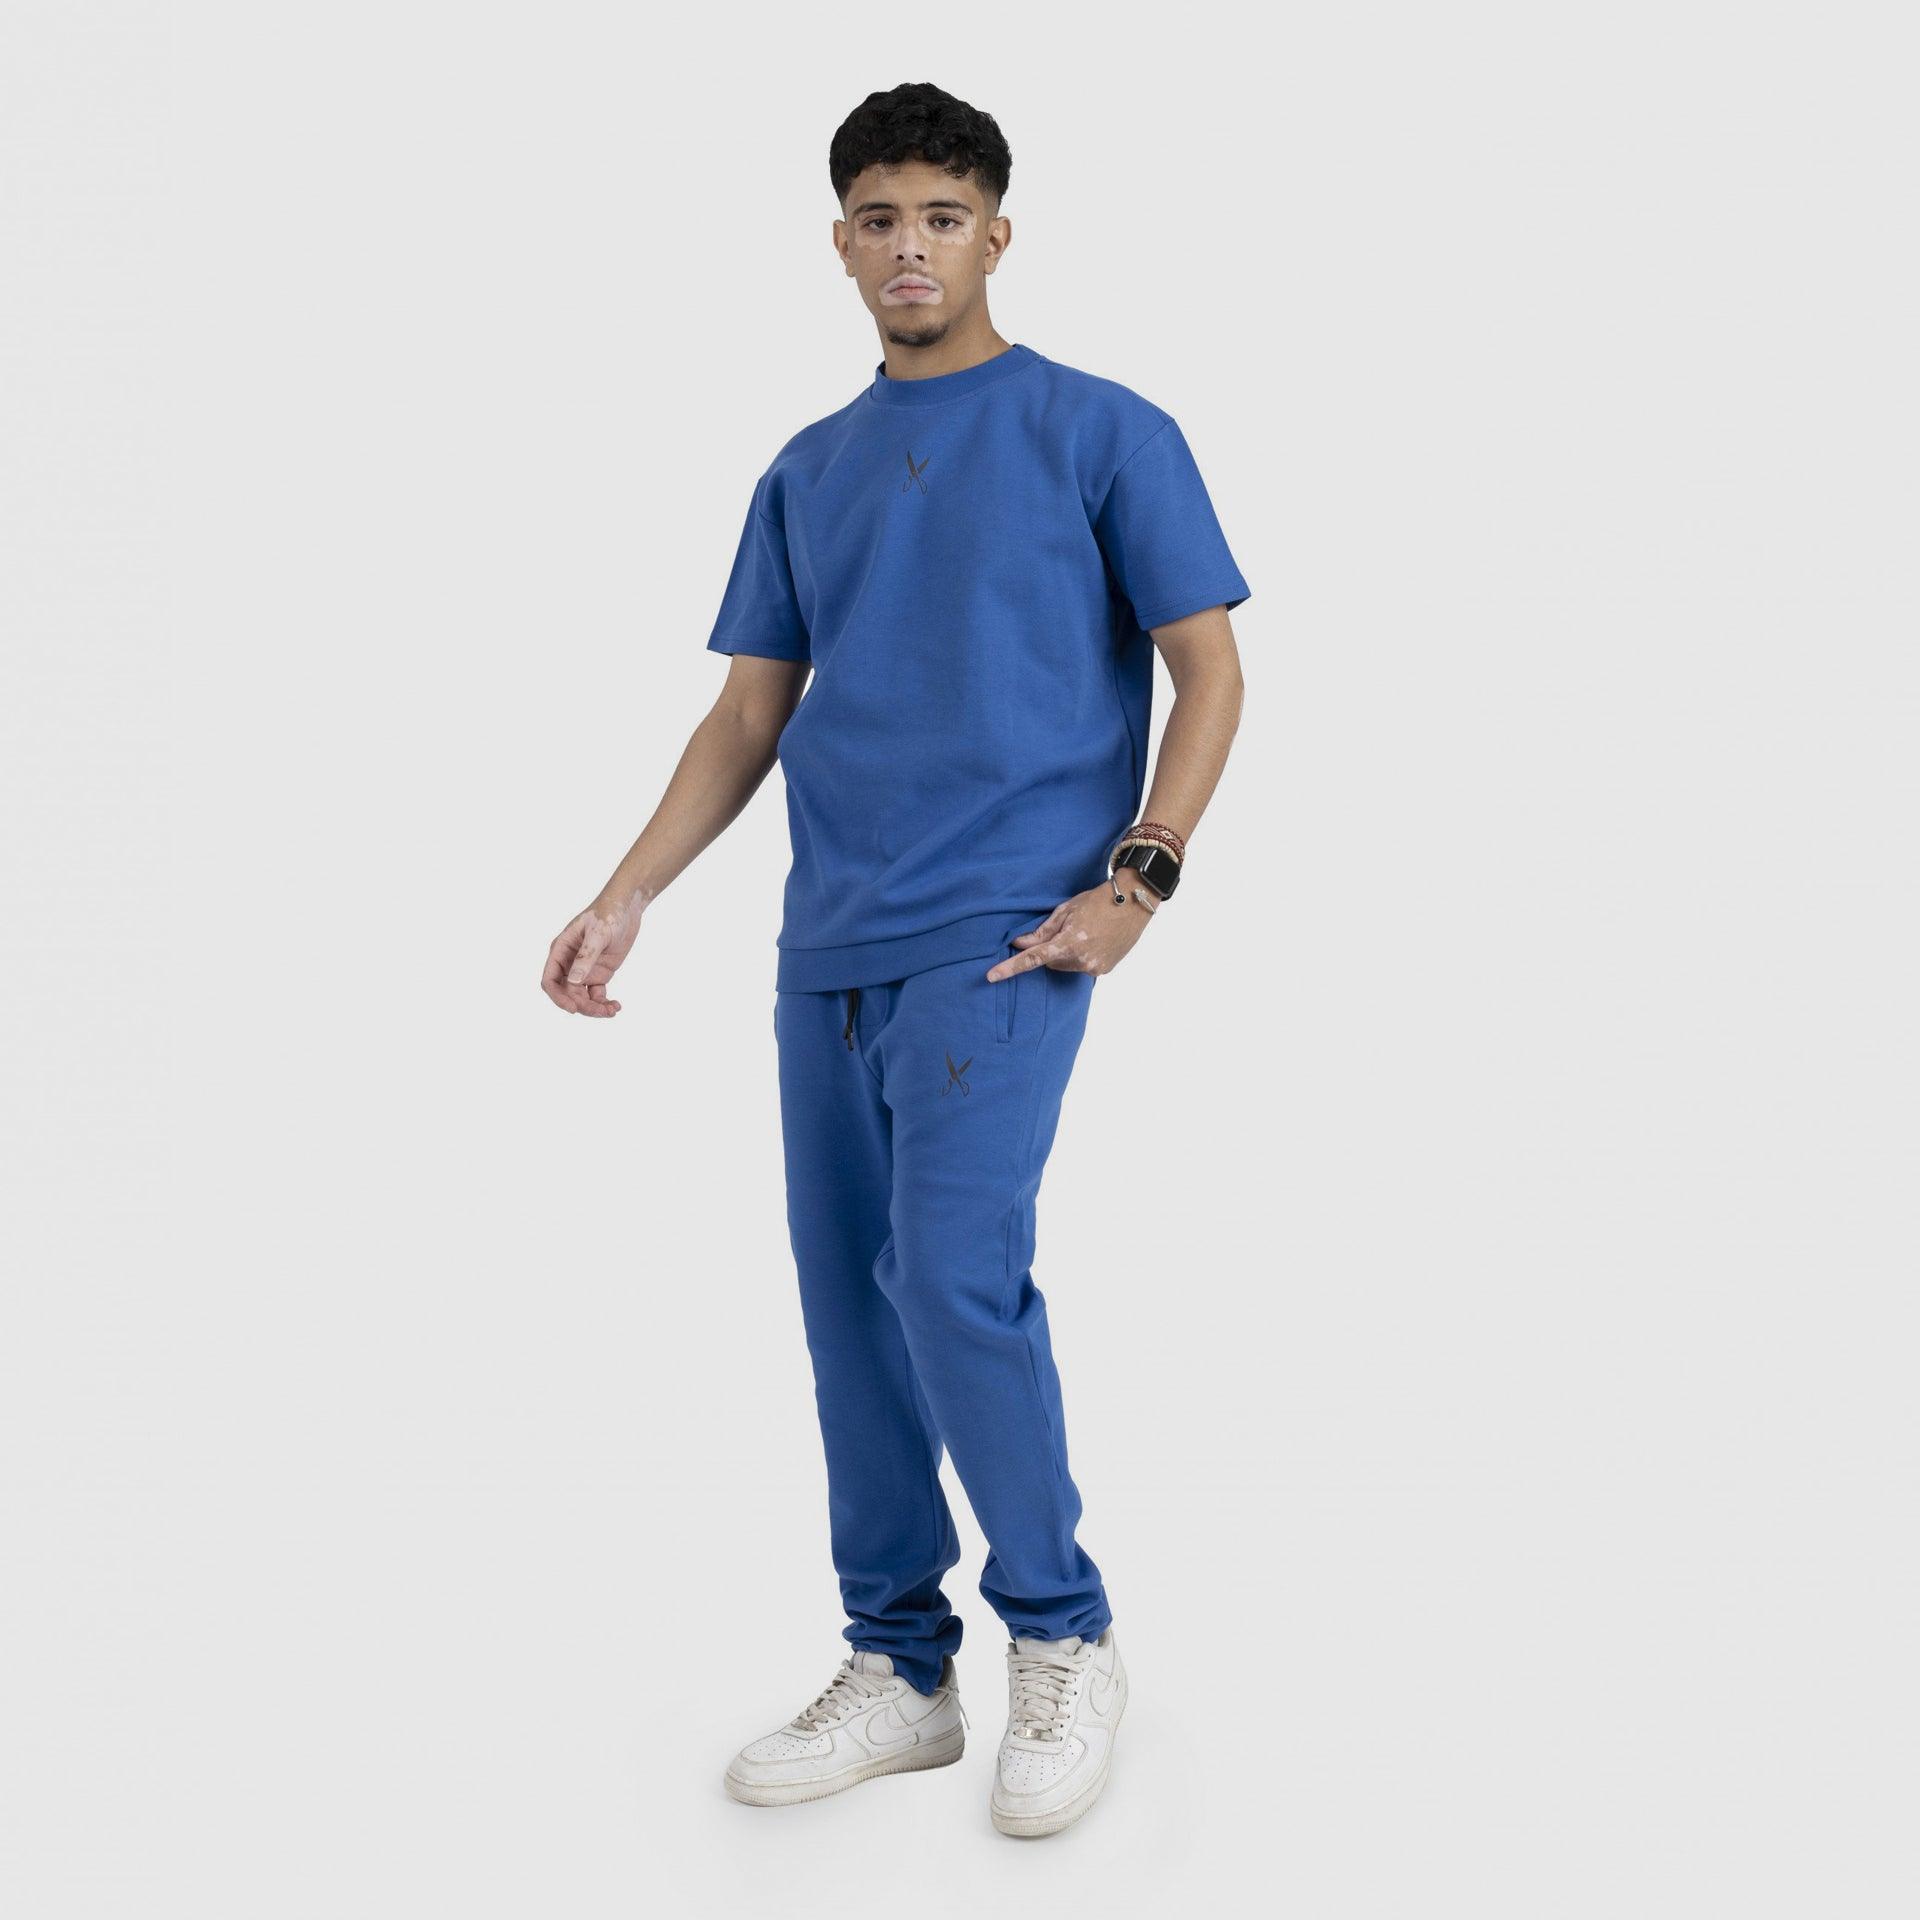 Blue Men T-shirt From Weaver Design - WECRE8